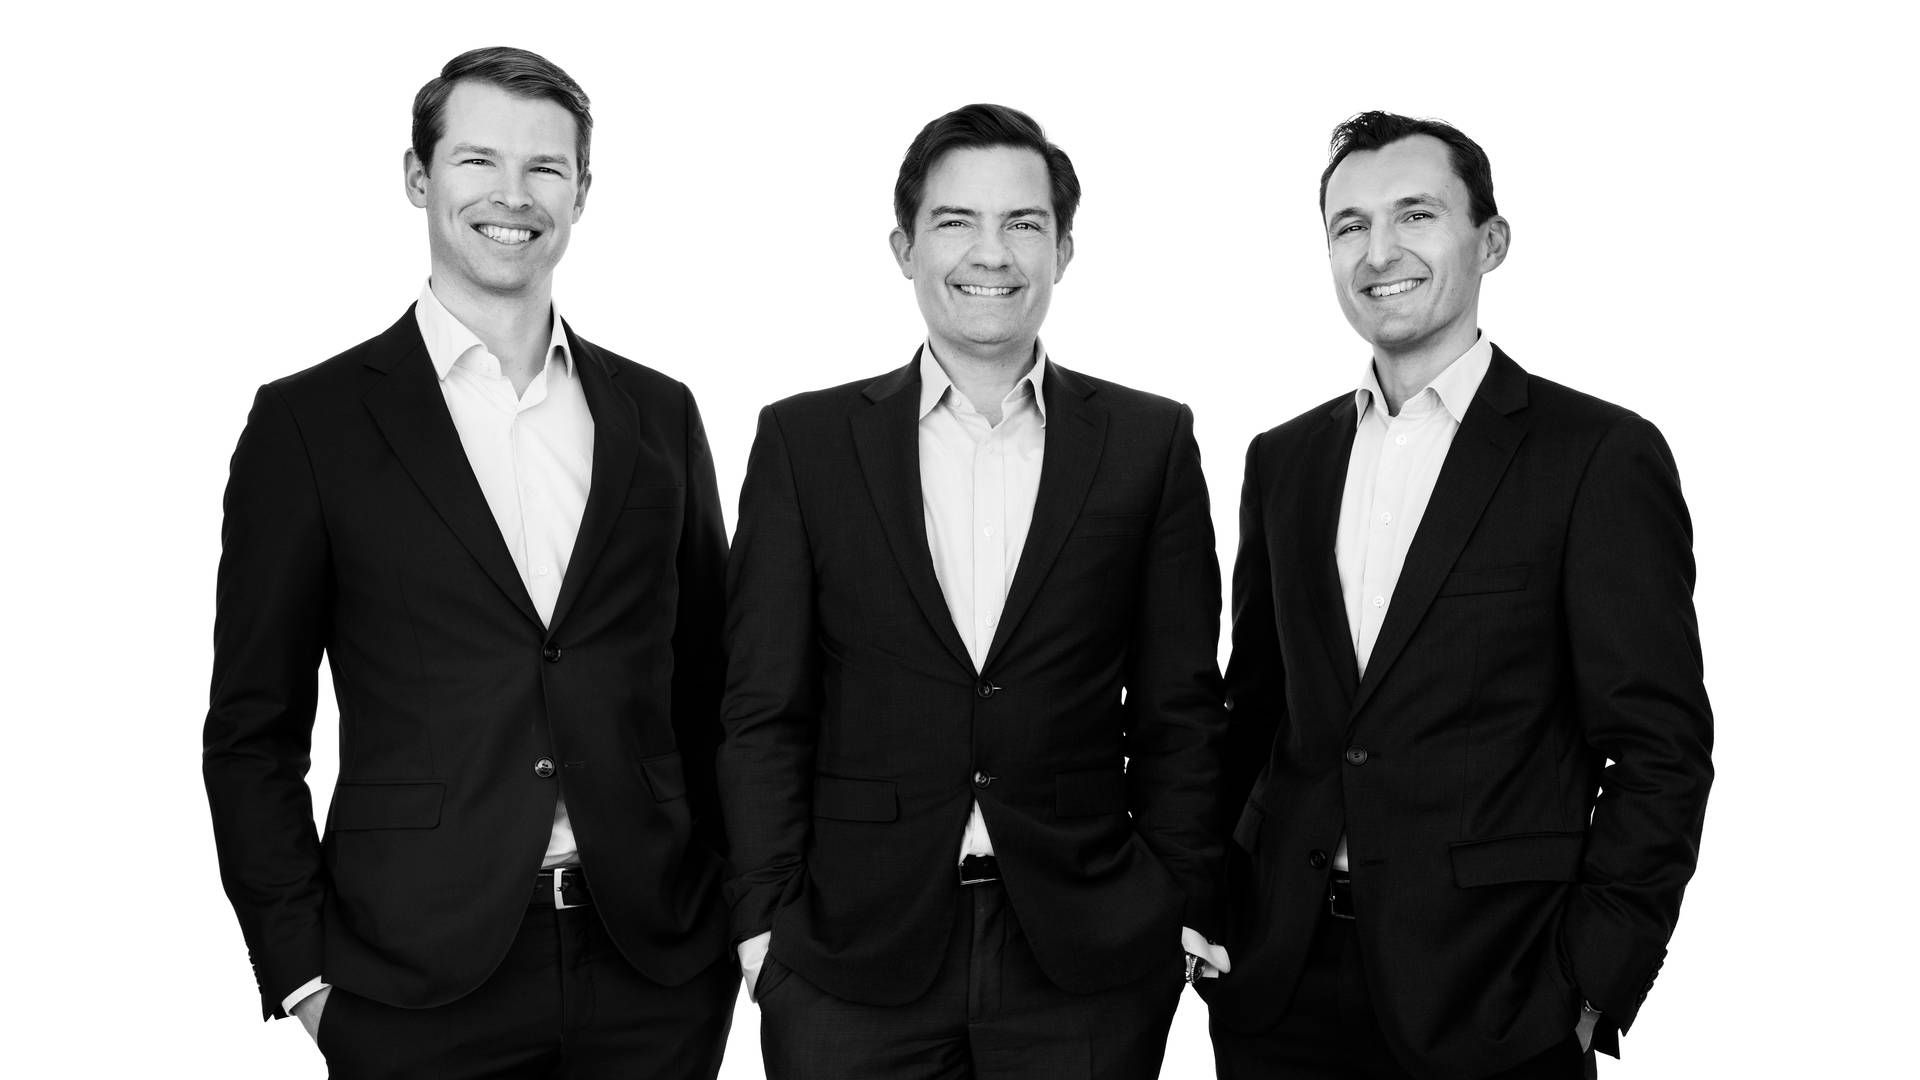 De tre stiftere af af Jera Capita, fra venstre Alexander Reventlow, Christen Estrup og Julien Marencic, der forlod Nordea Asset Management i efteråret 2021 for at blive selvstændige. | Foto: Pr / Jera Capital